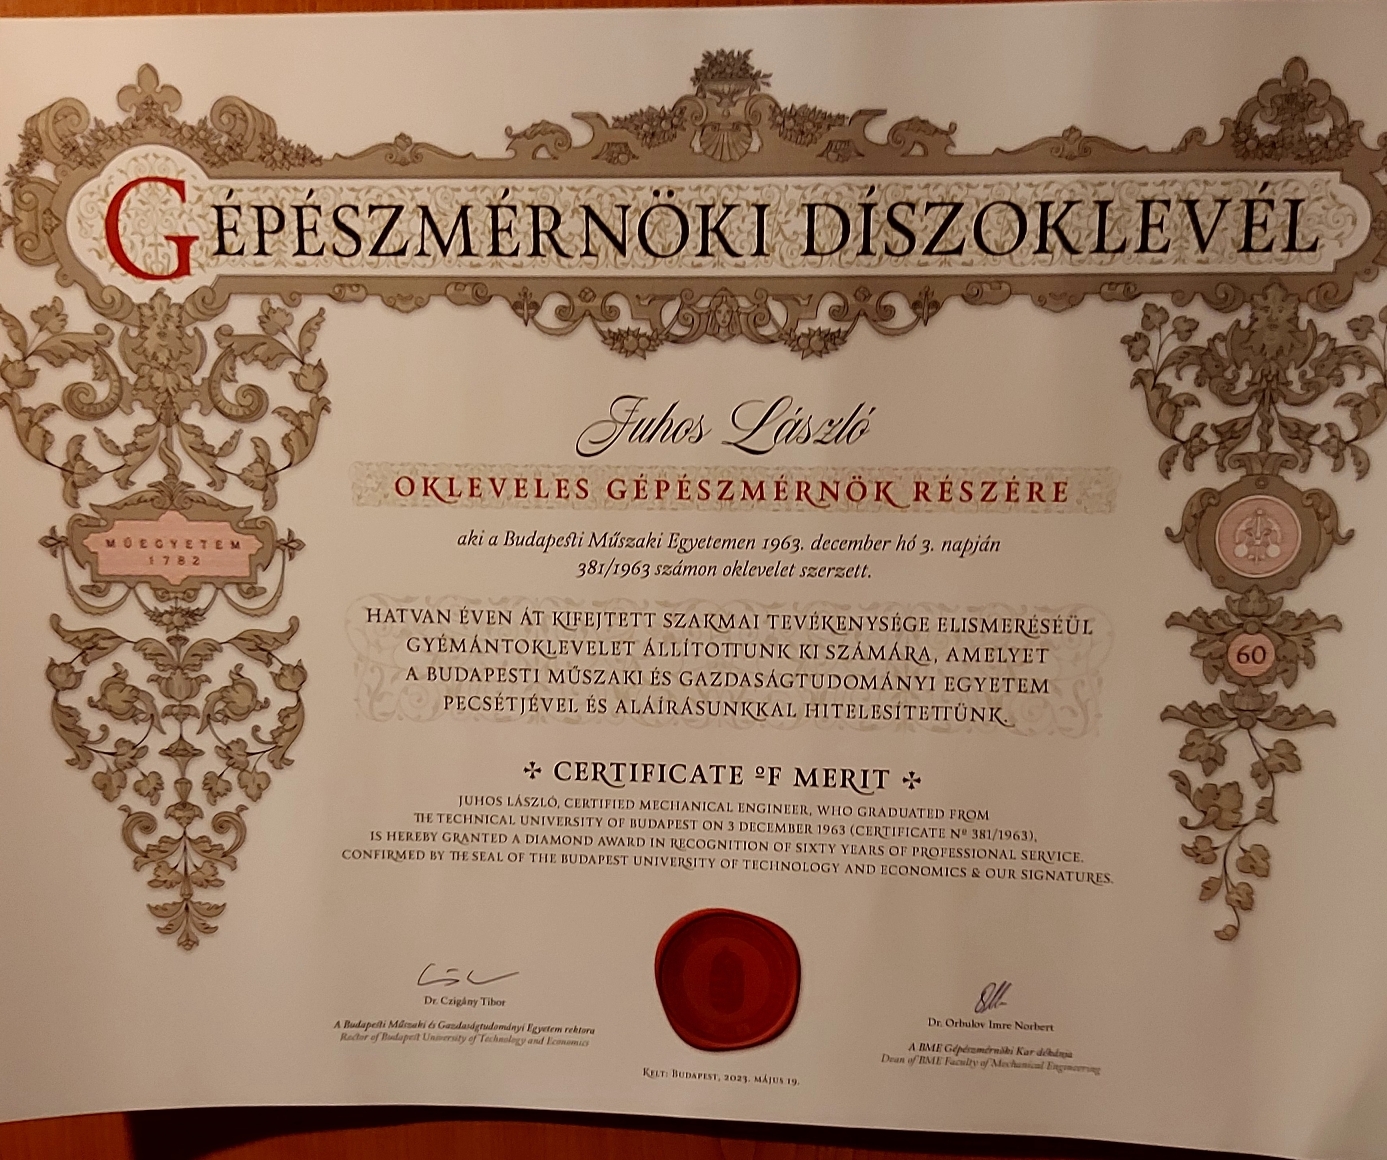 Juhos Lszl Gymnt diplomt kapott